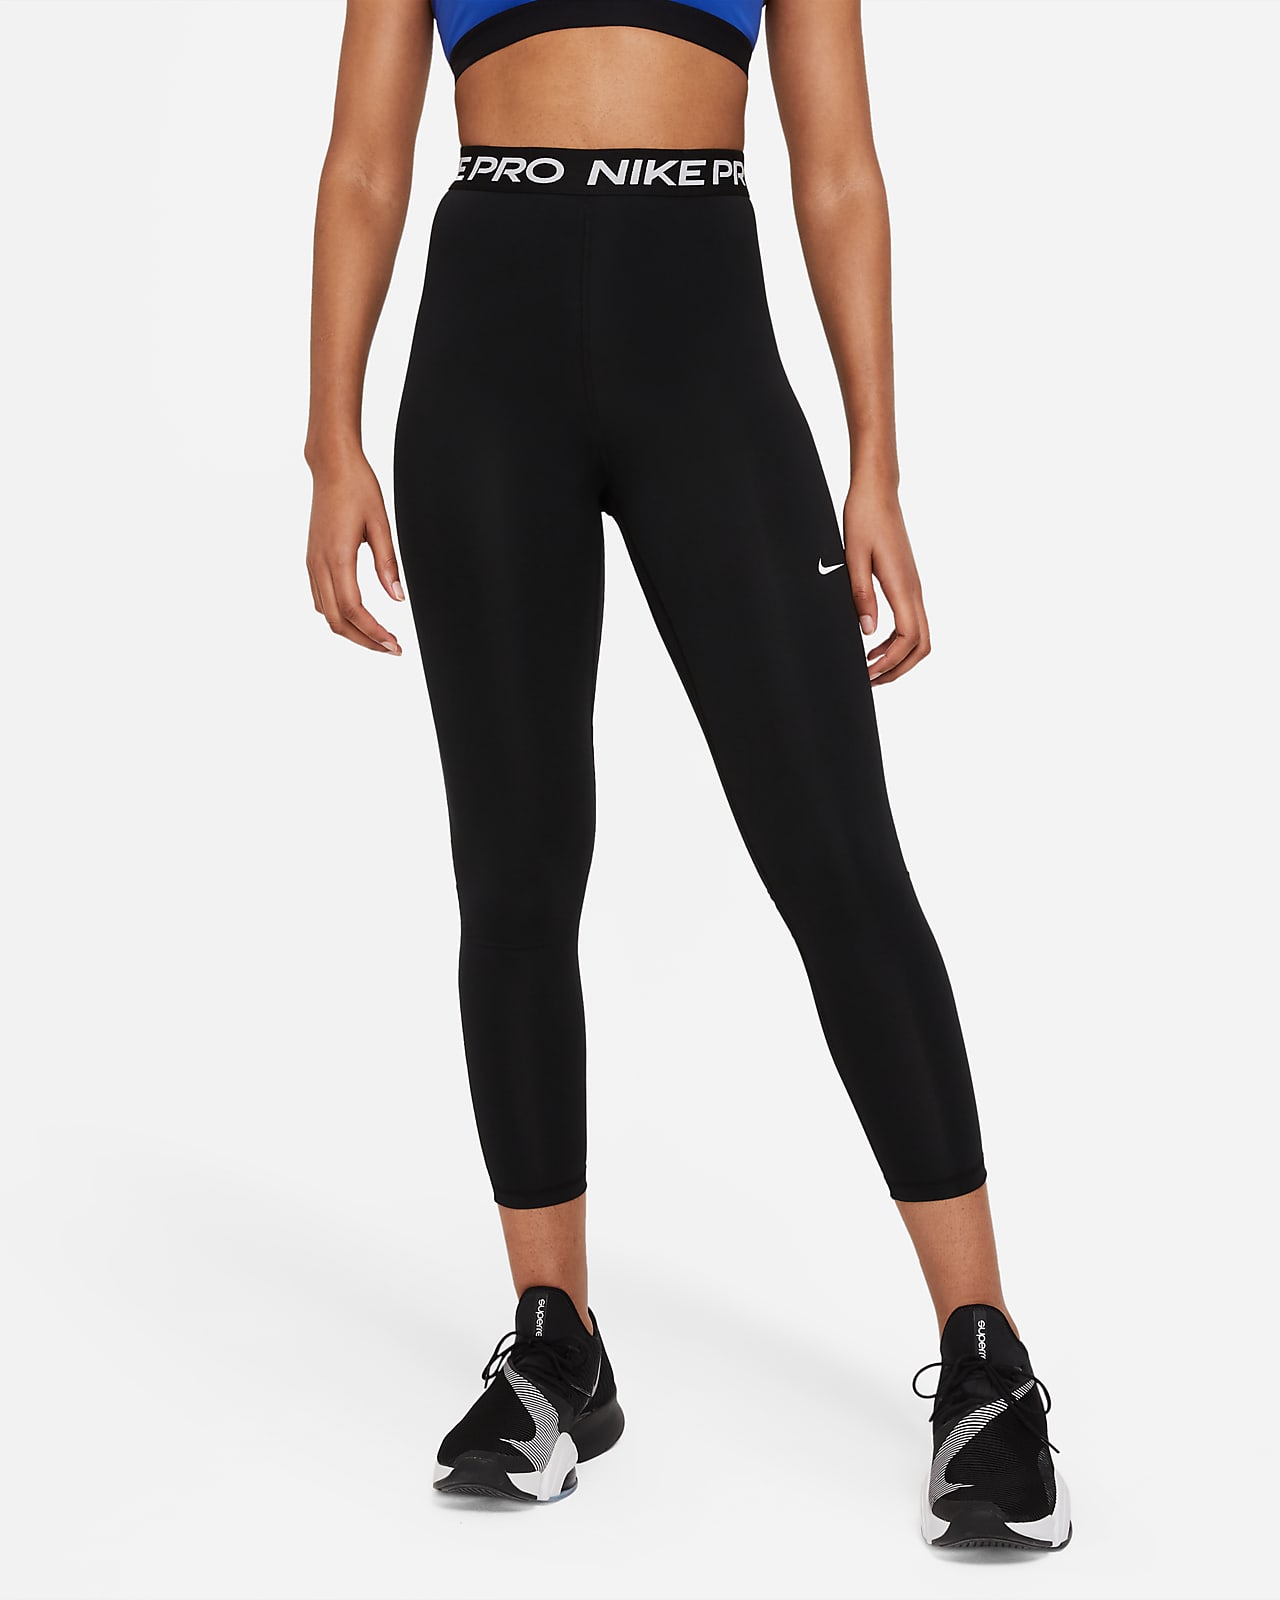 Leggings con paneles de malla de tiro alto de 7/8 para mujer Nike